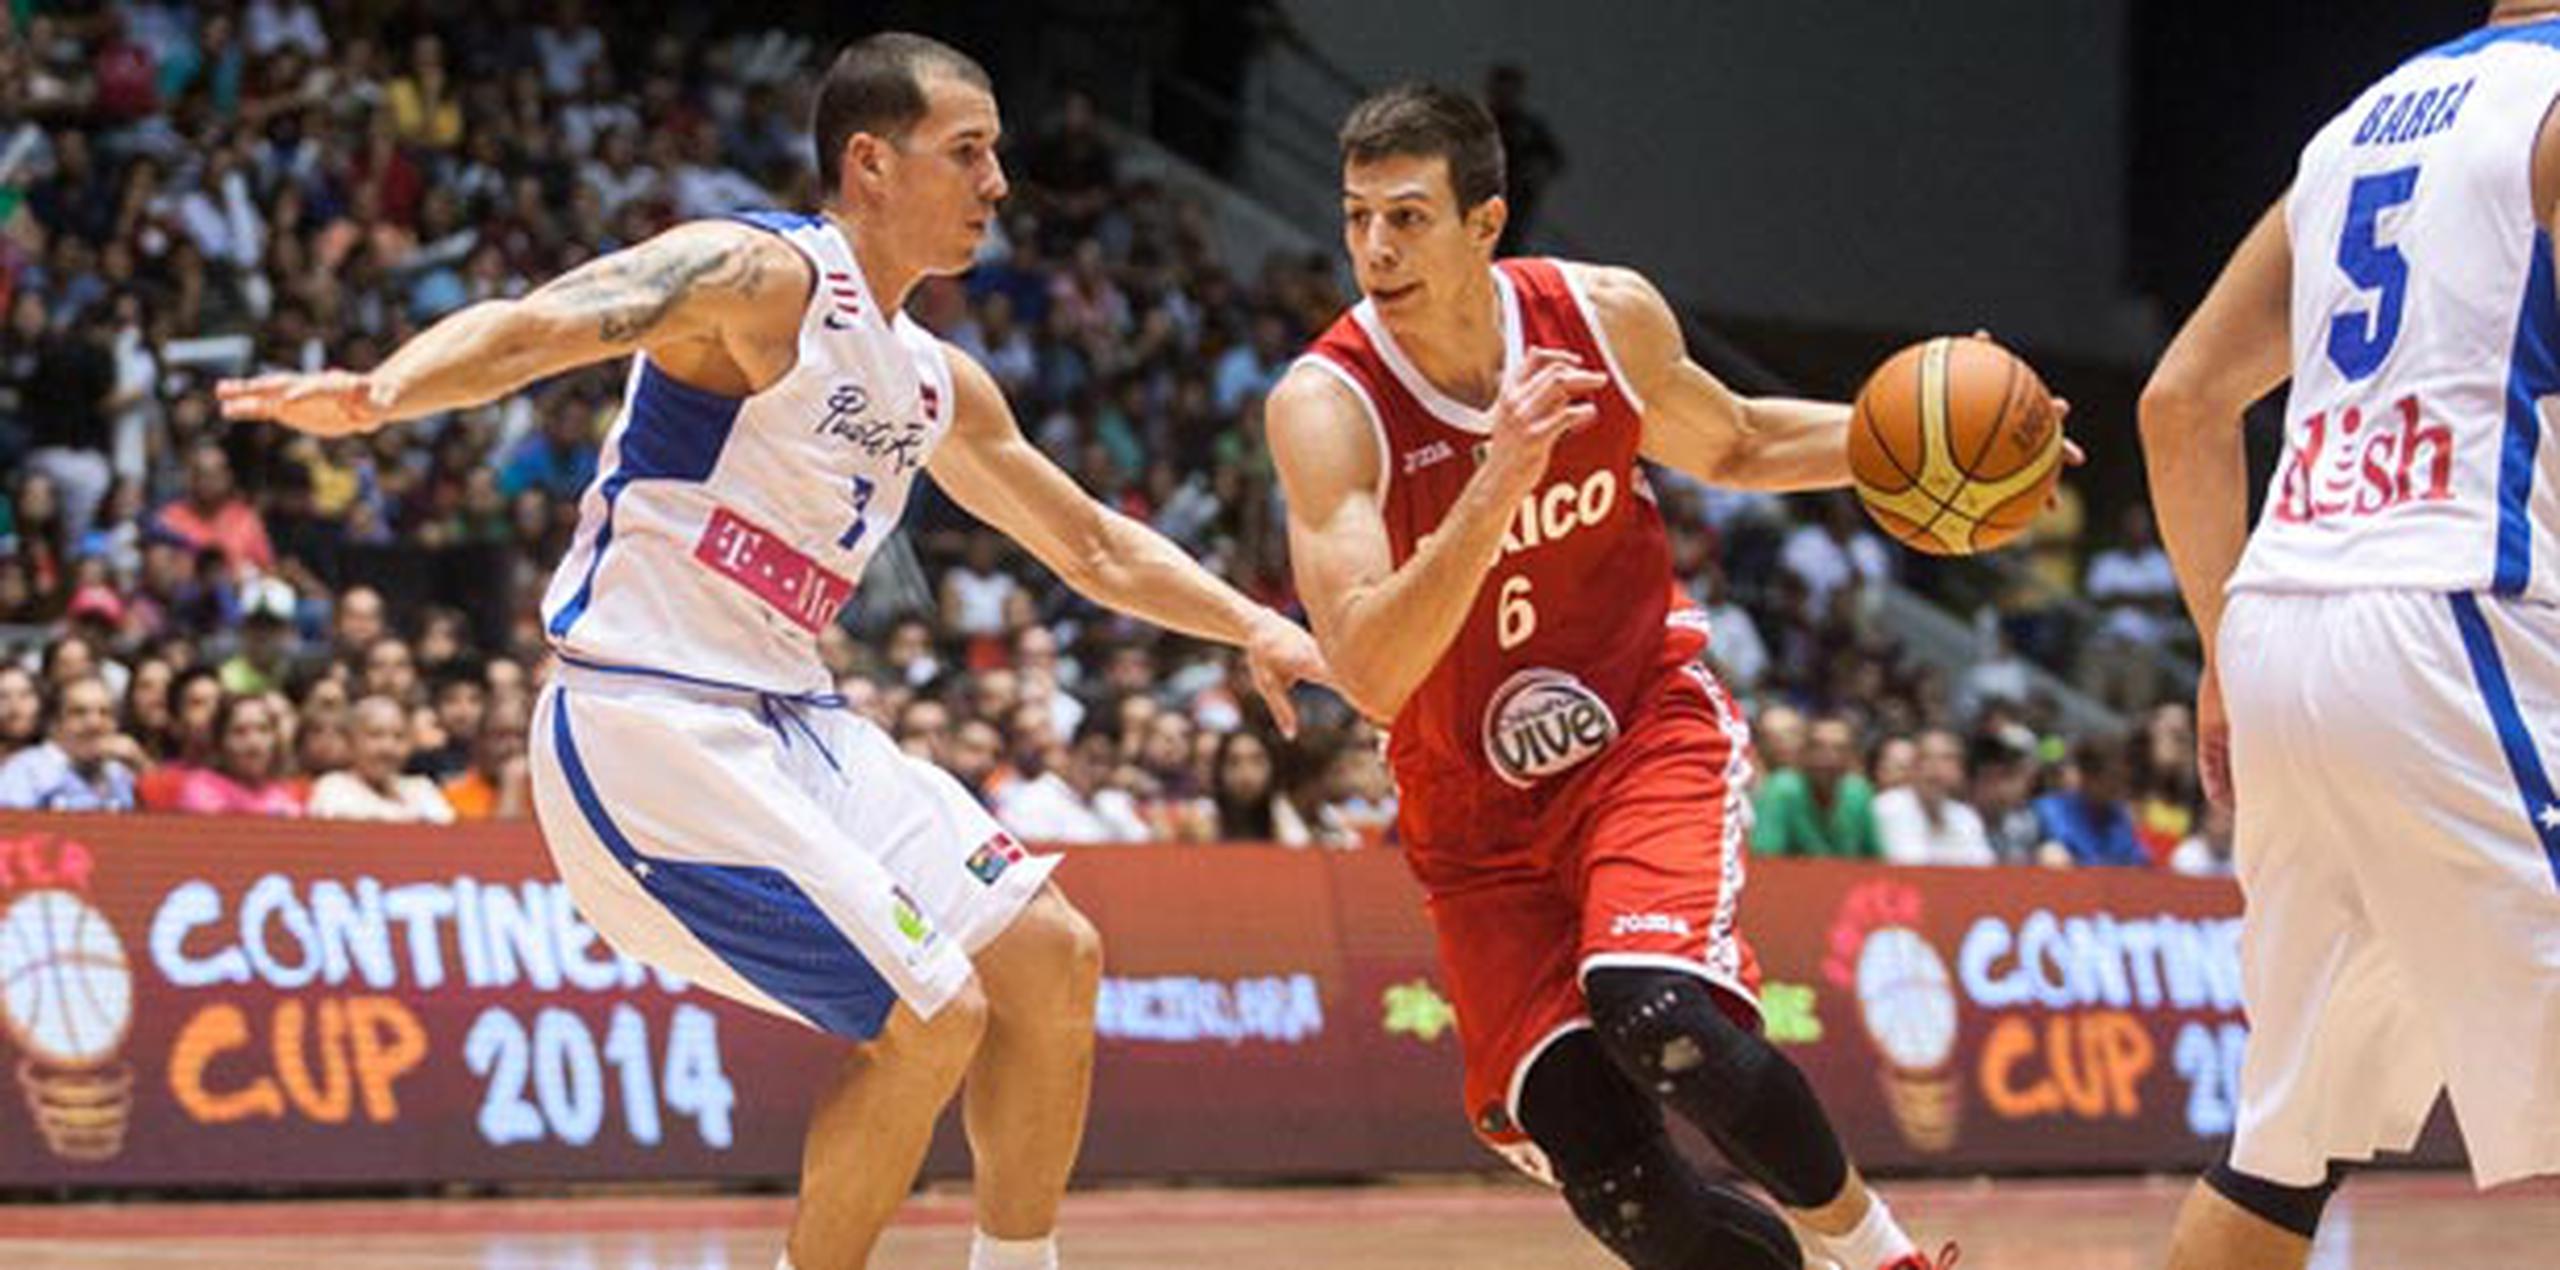 Román Martínez, en gestión de ataque frente a Carlos Rivera, terminó el juego con 14 puntos. (FIBA Américas / Samuel Vélez)